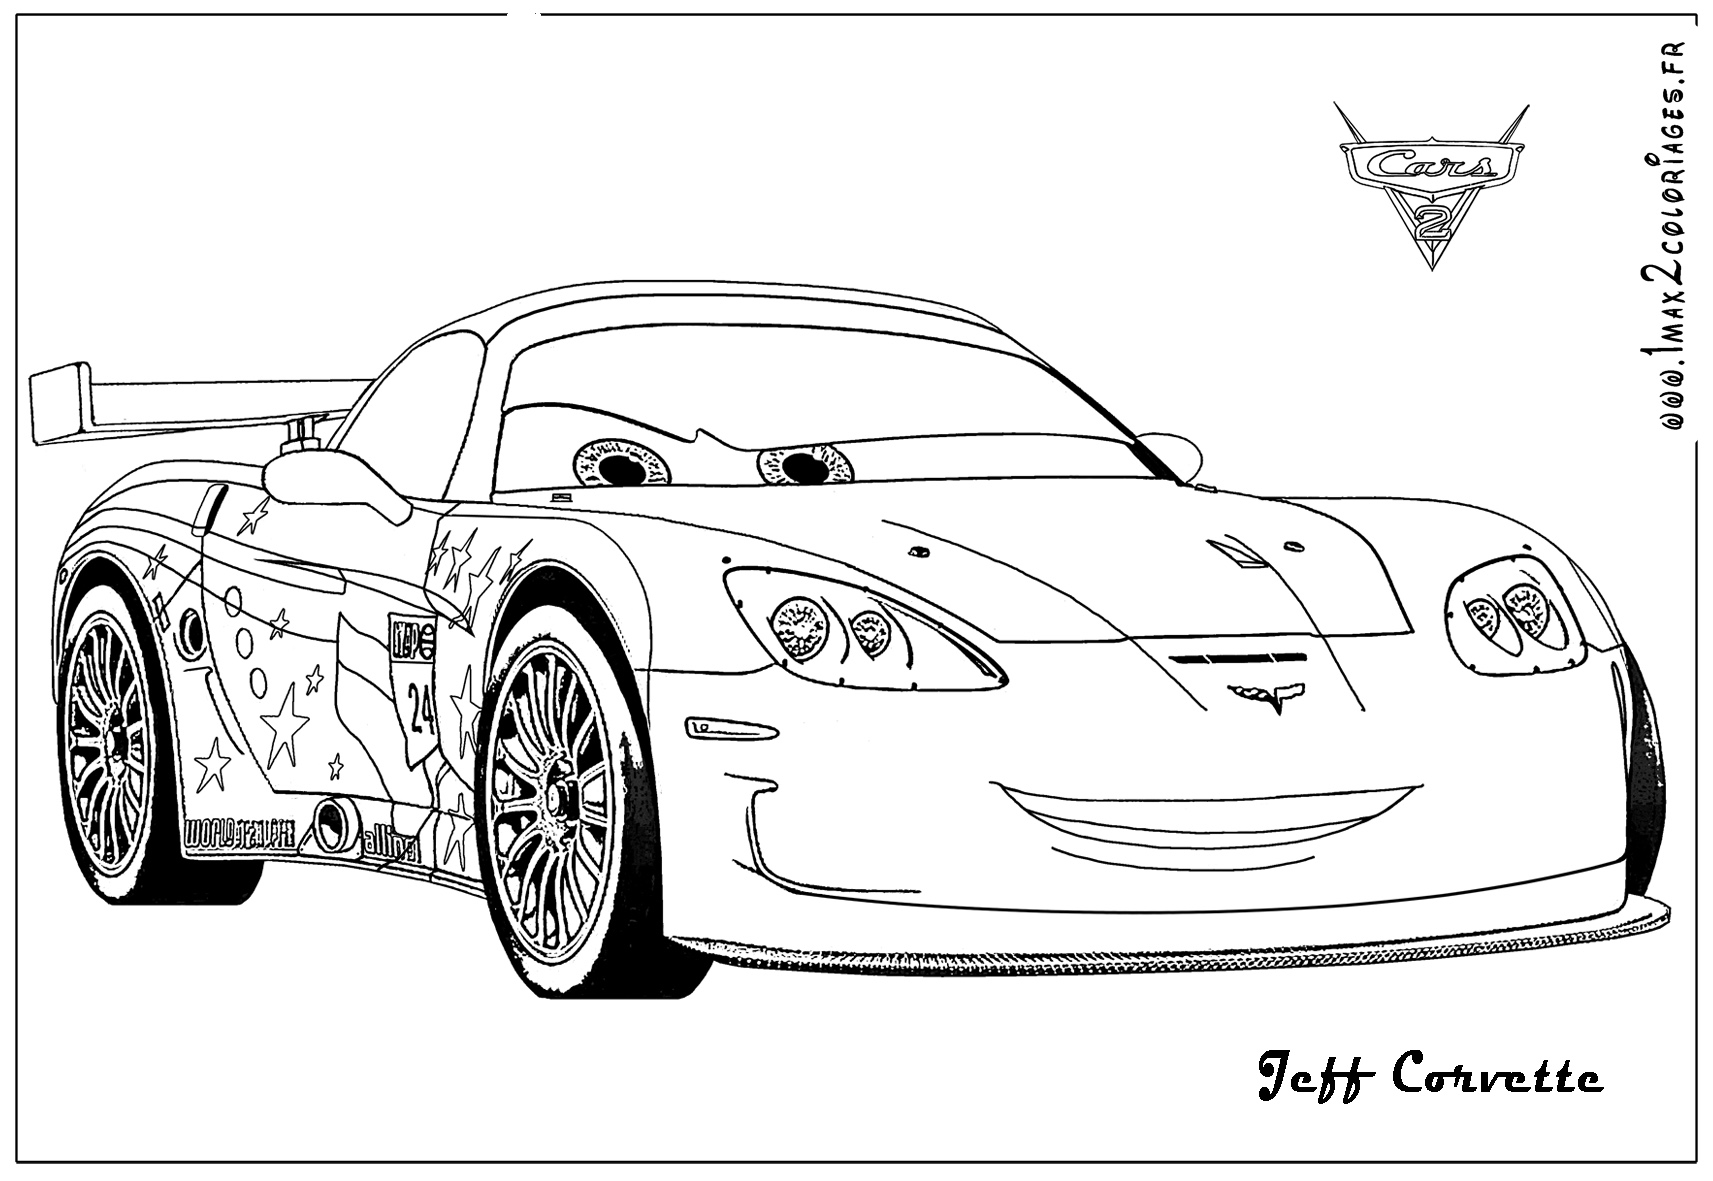 Jeff Corvette Cars 2 immagine da colorare